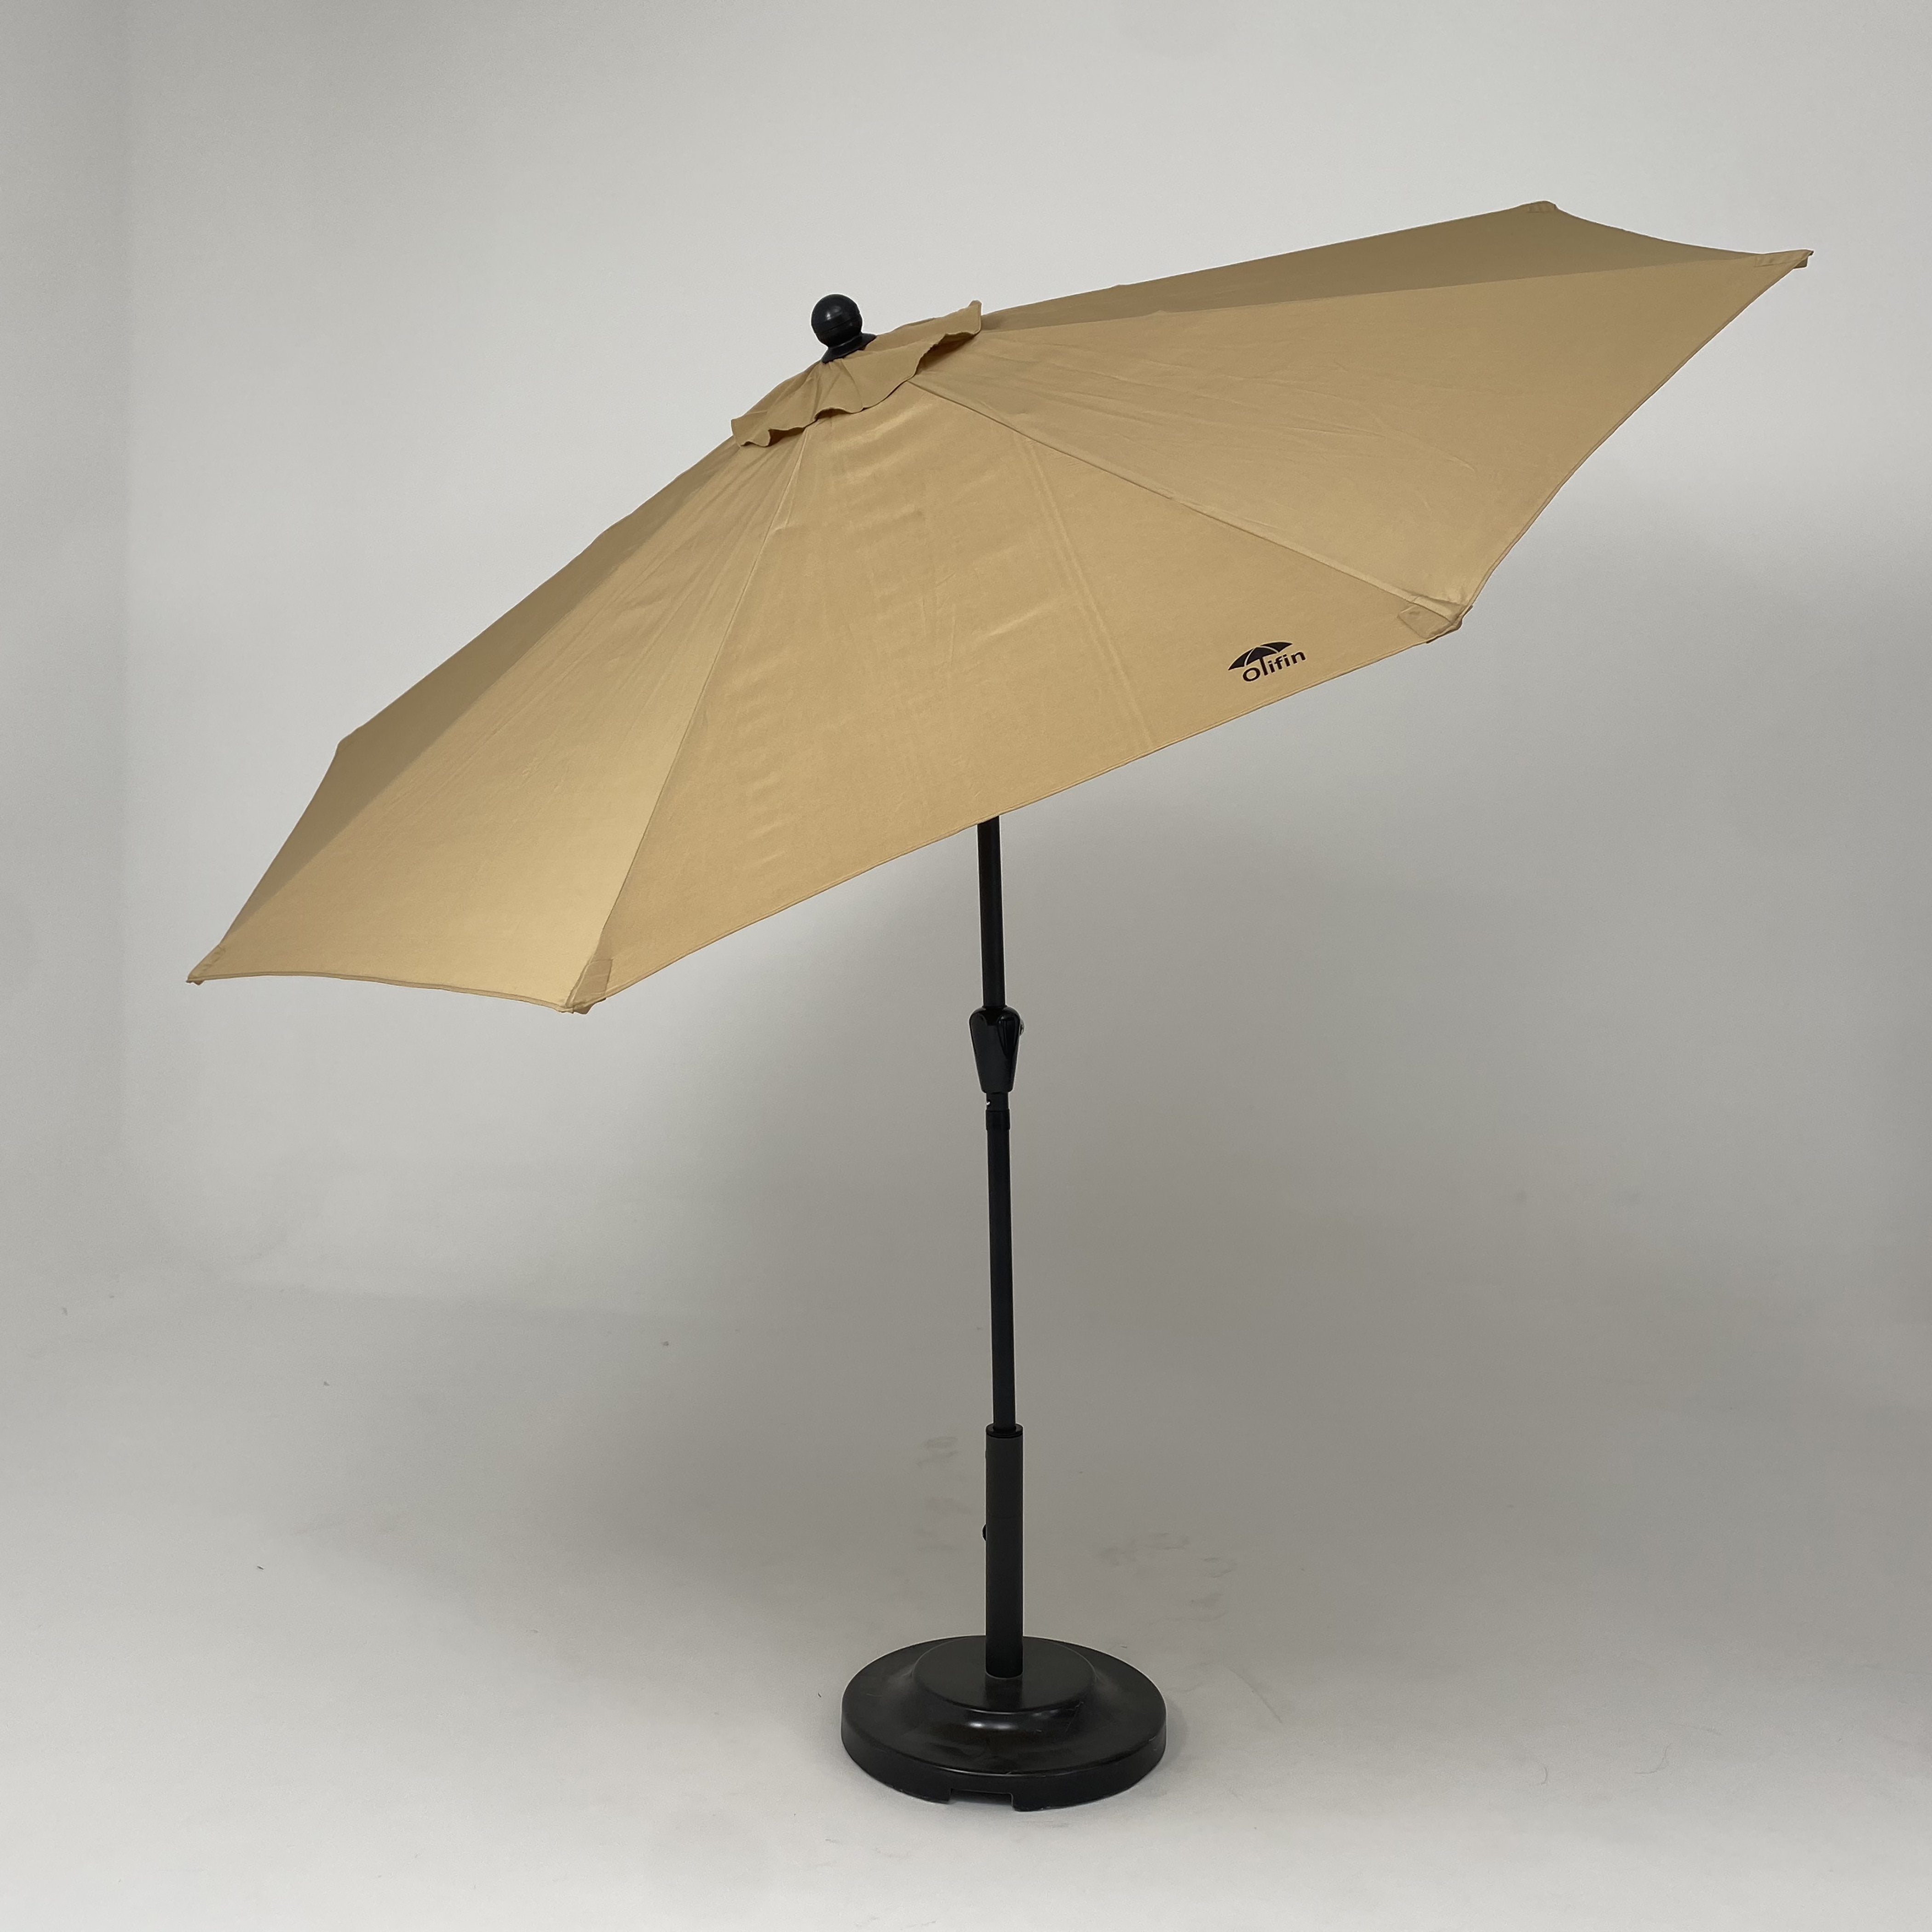 Olefin Patio Umbrella with Push Button Tilt - ABC-CANOPY